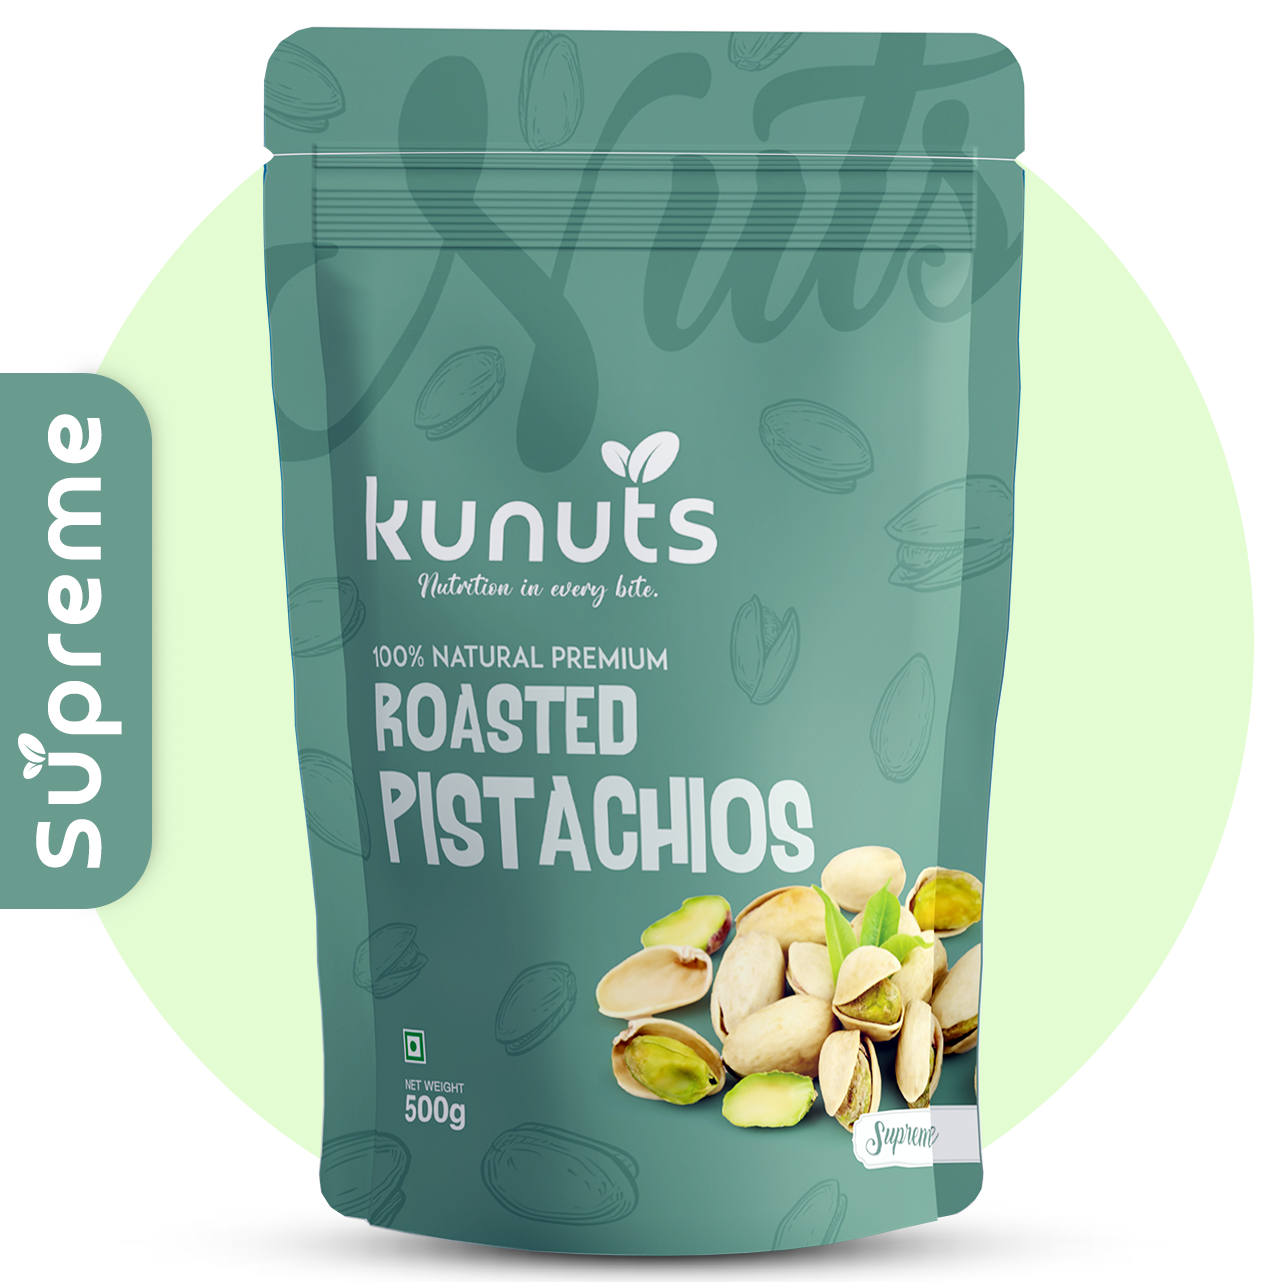 Pistachio: Natural & Premium (Supreme)